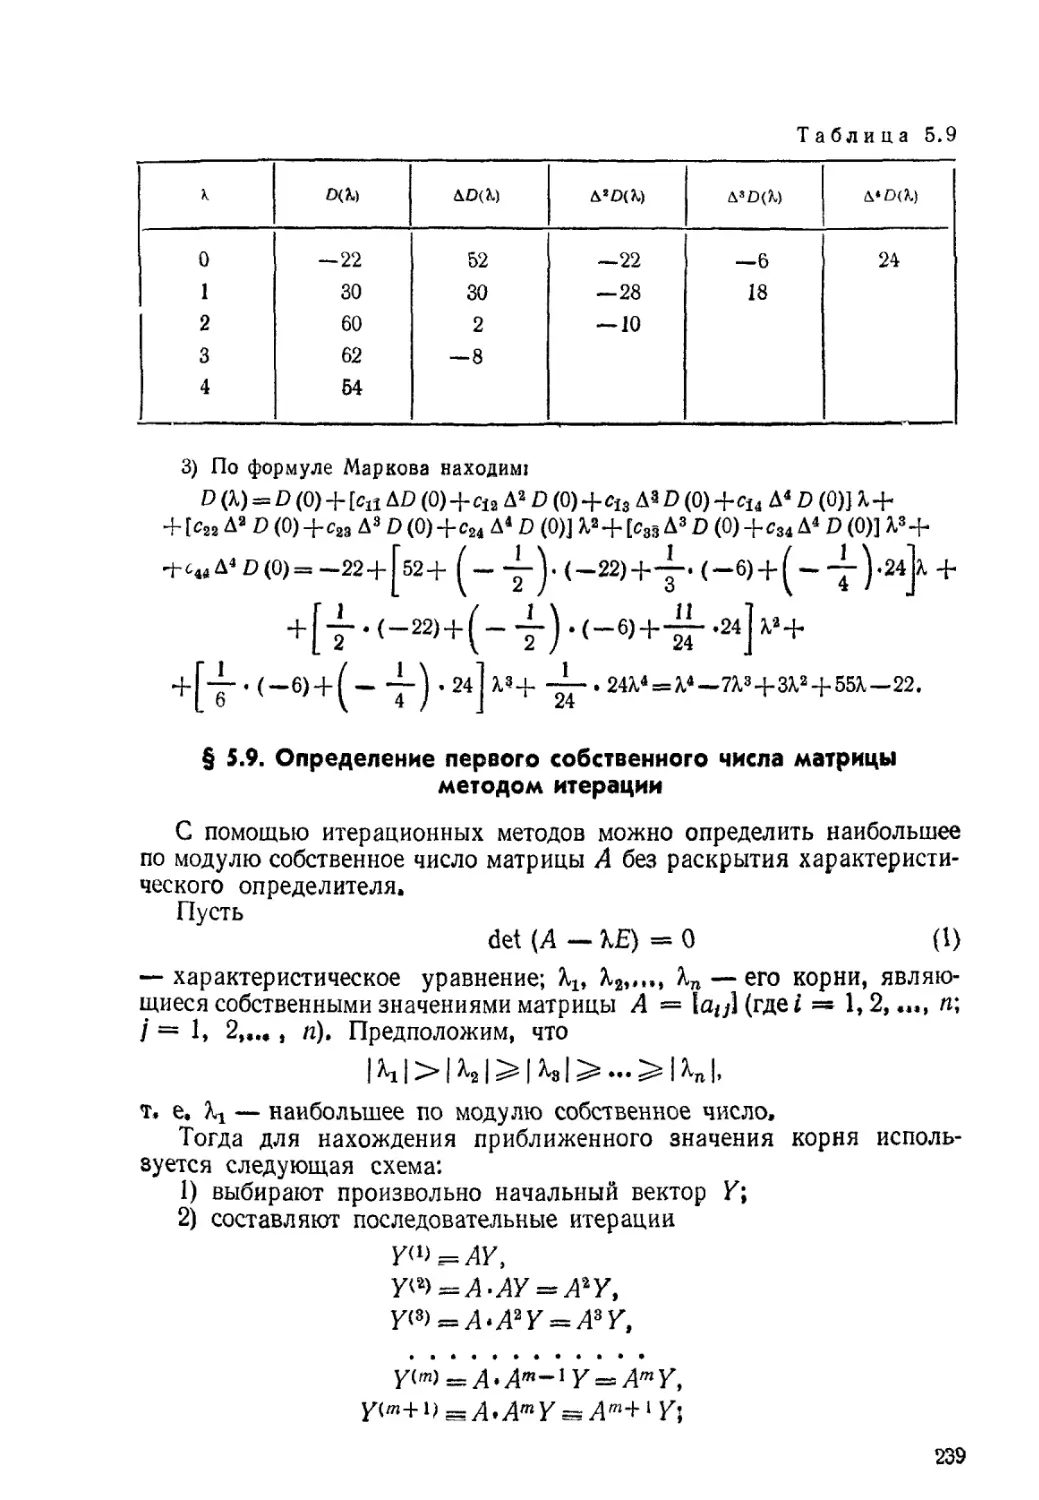 § 5.9. Определение первого собственного числа матрицы методом итерации